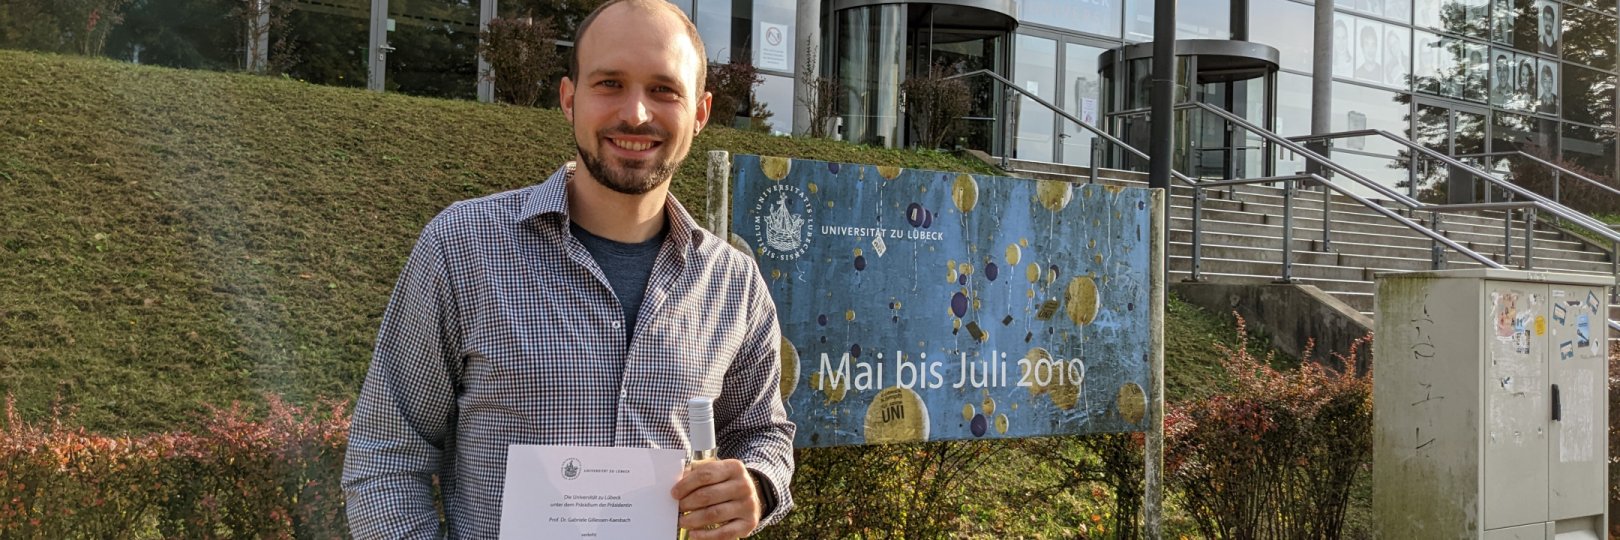 Jan Kopetz steht mit seiner Urkunde des Lehrpreises vor dem Audimax der Universität zu Lübeck.